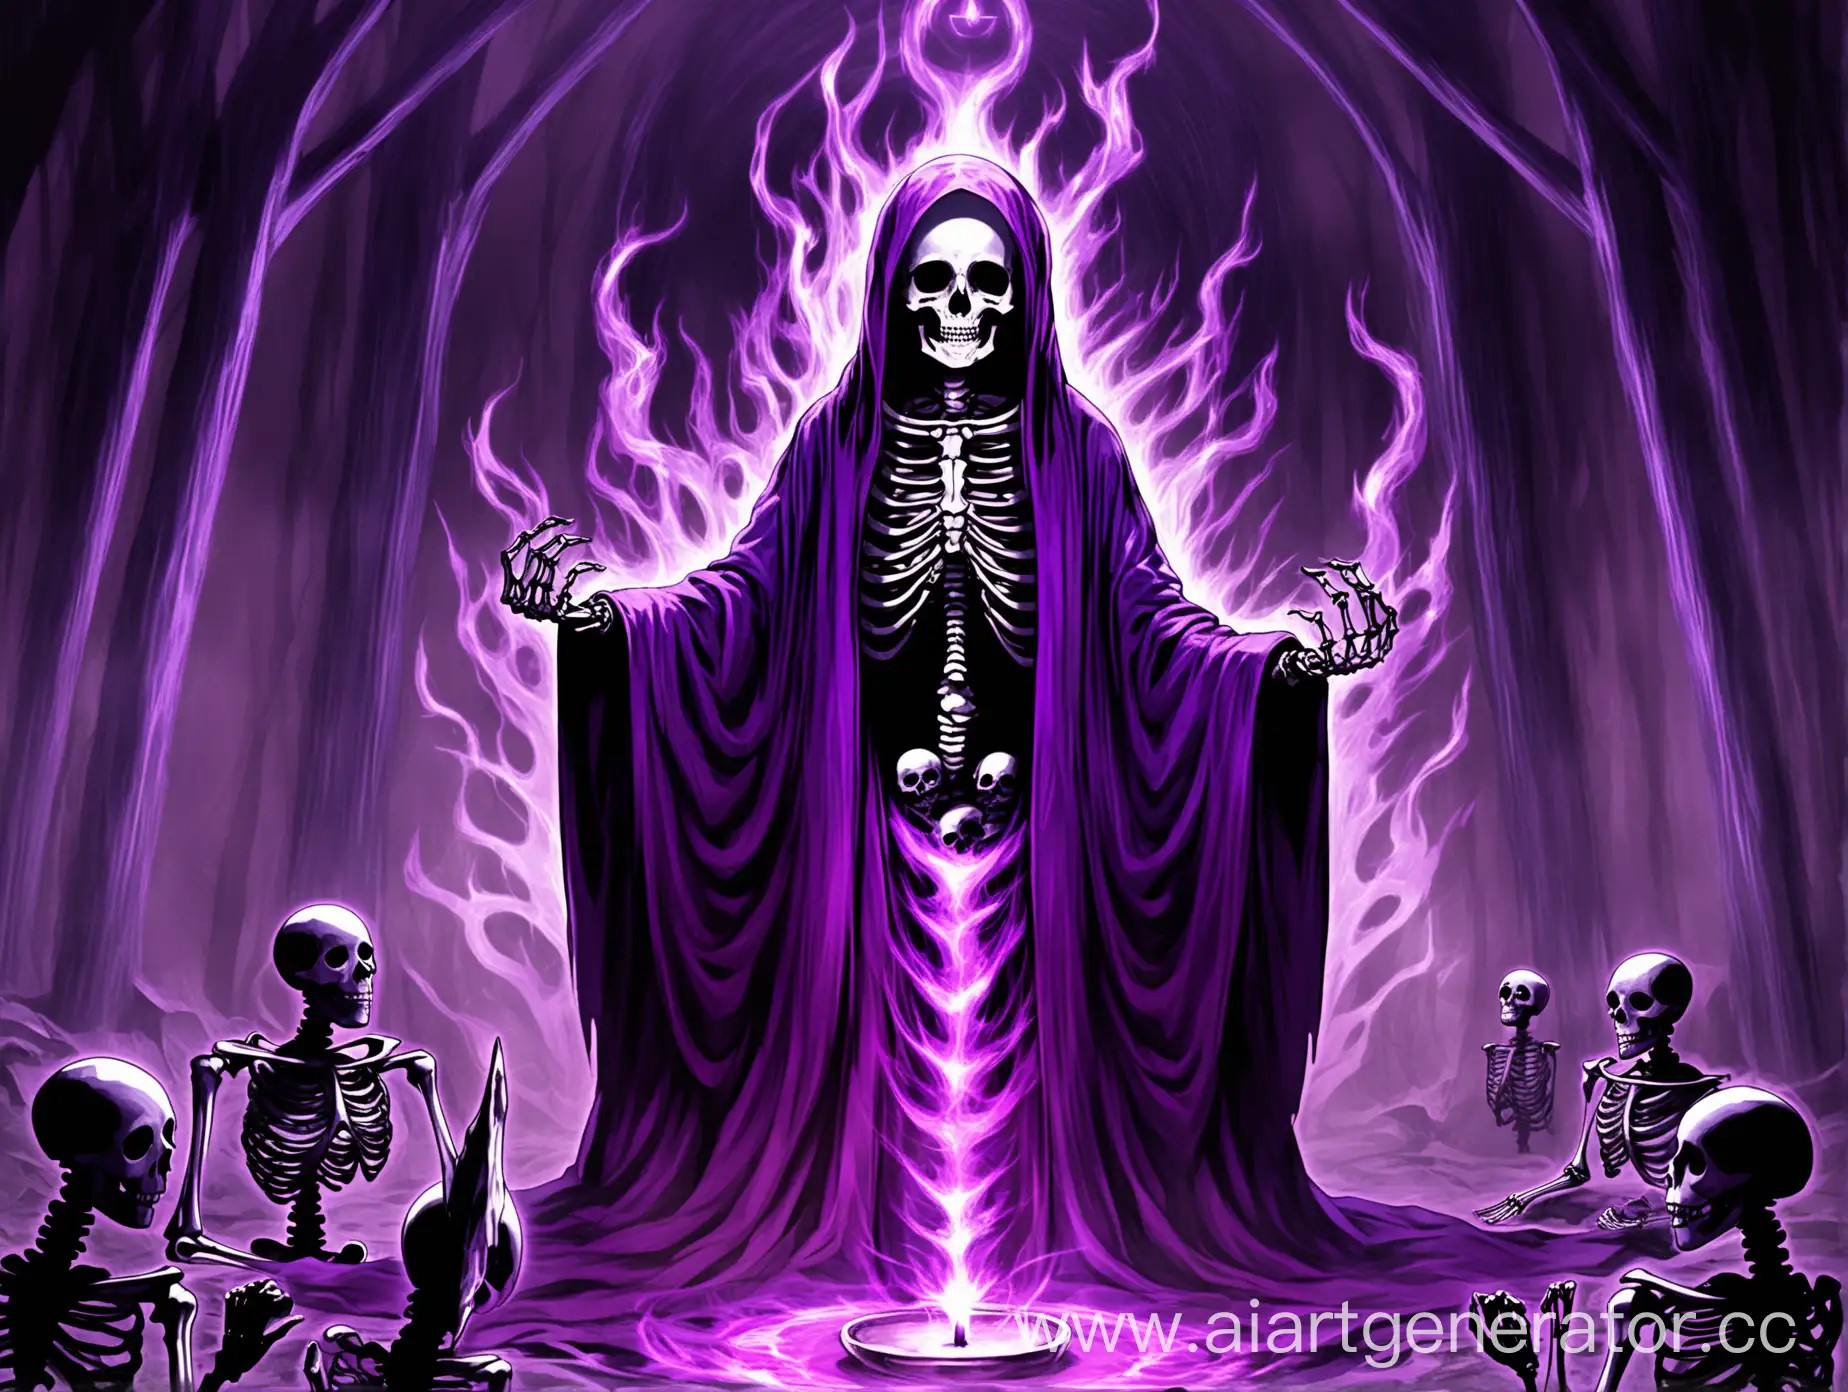 Скелет некромант в фиолетовом одеянии. Тёмно-фиолетовая аура, призыв нечести
